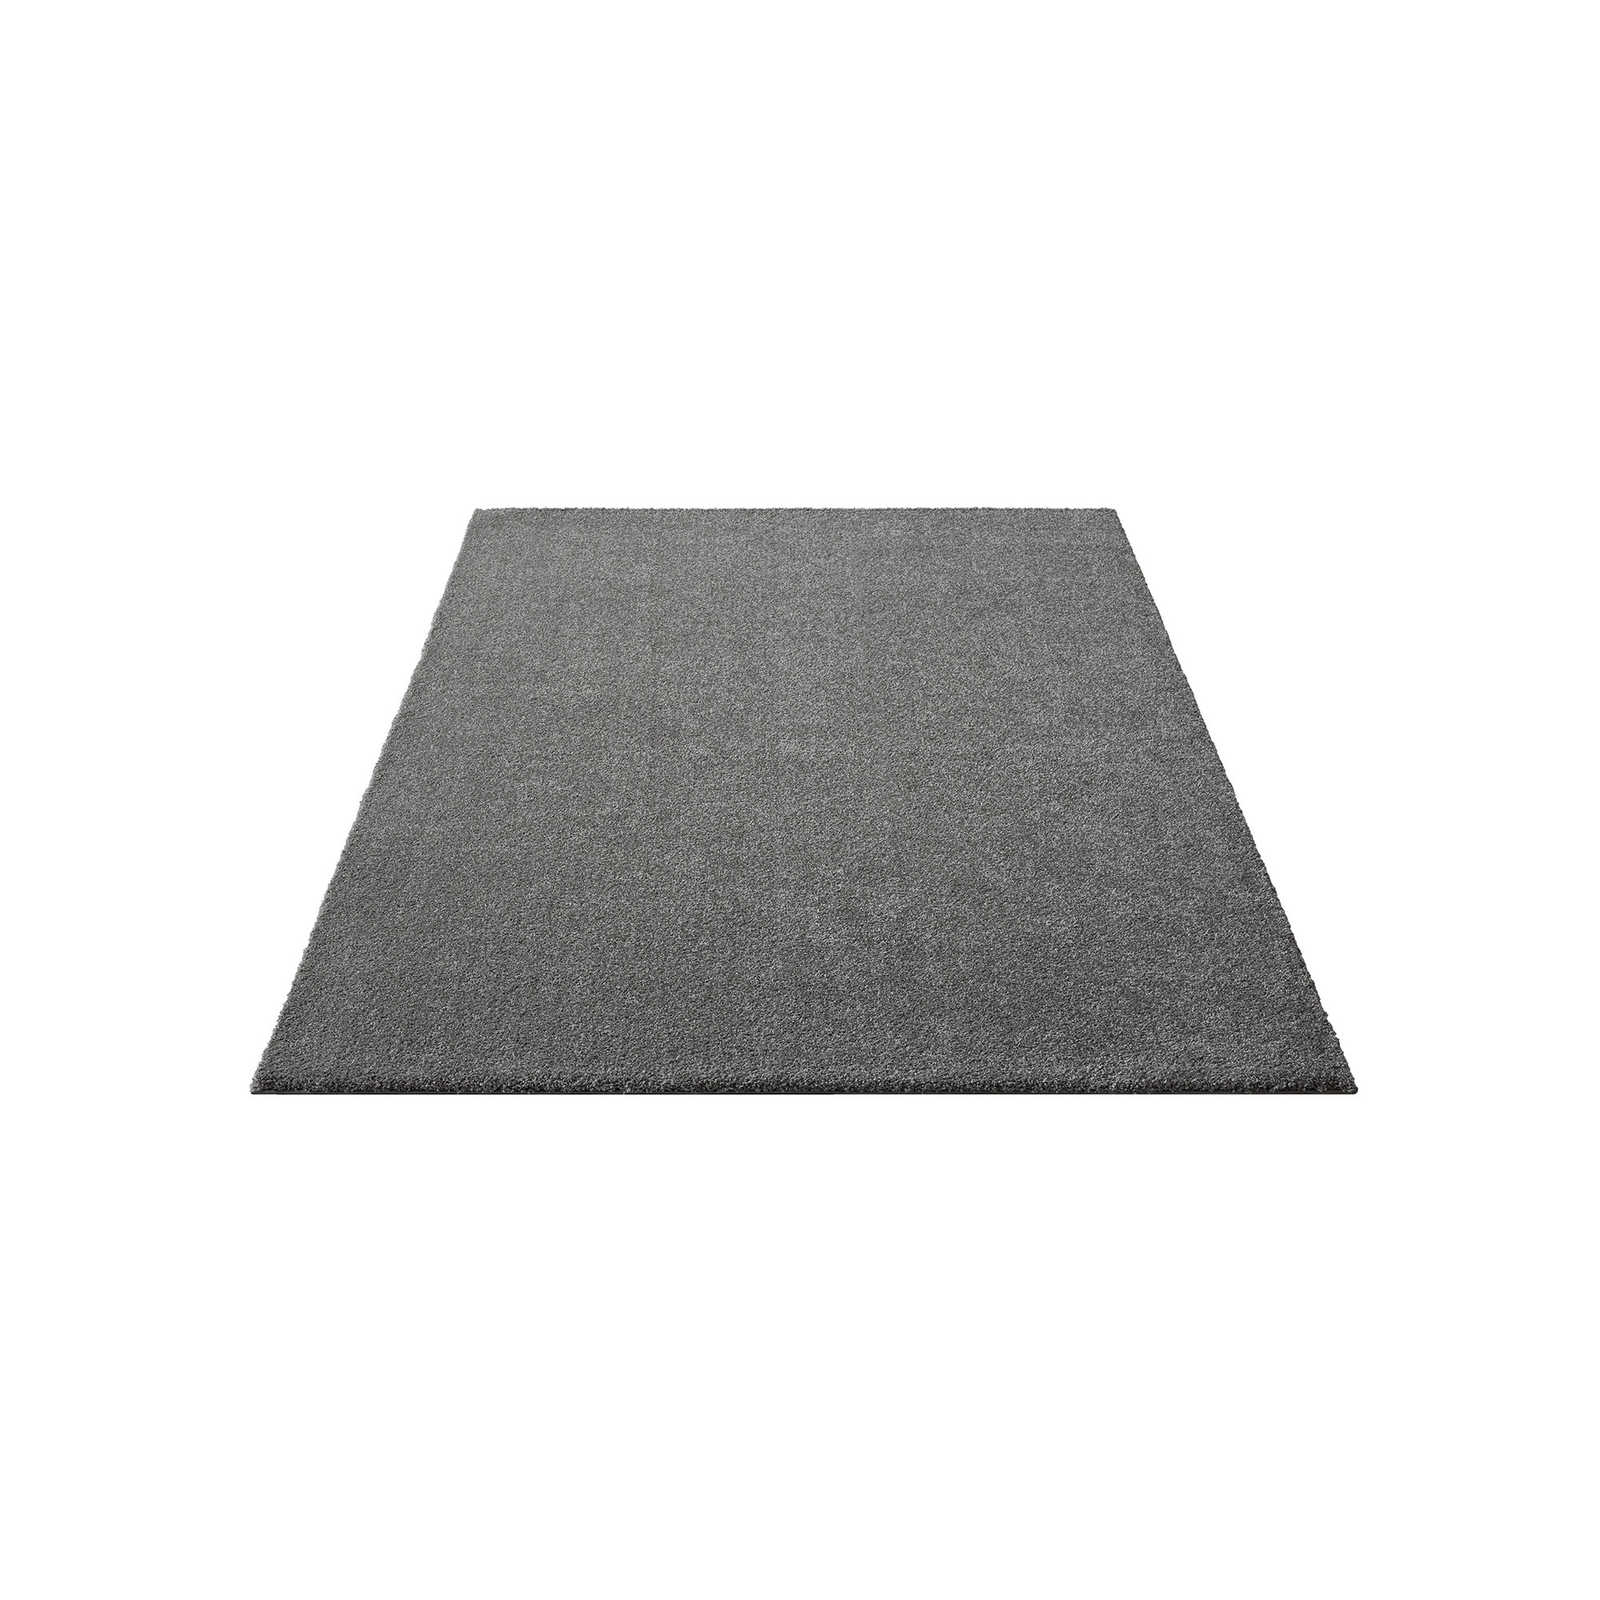 Flauschiger Kurzflor Teppich in Grau – 200 x 140 cm
